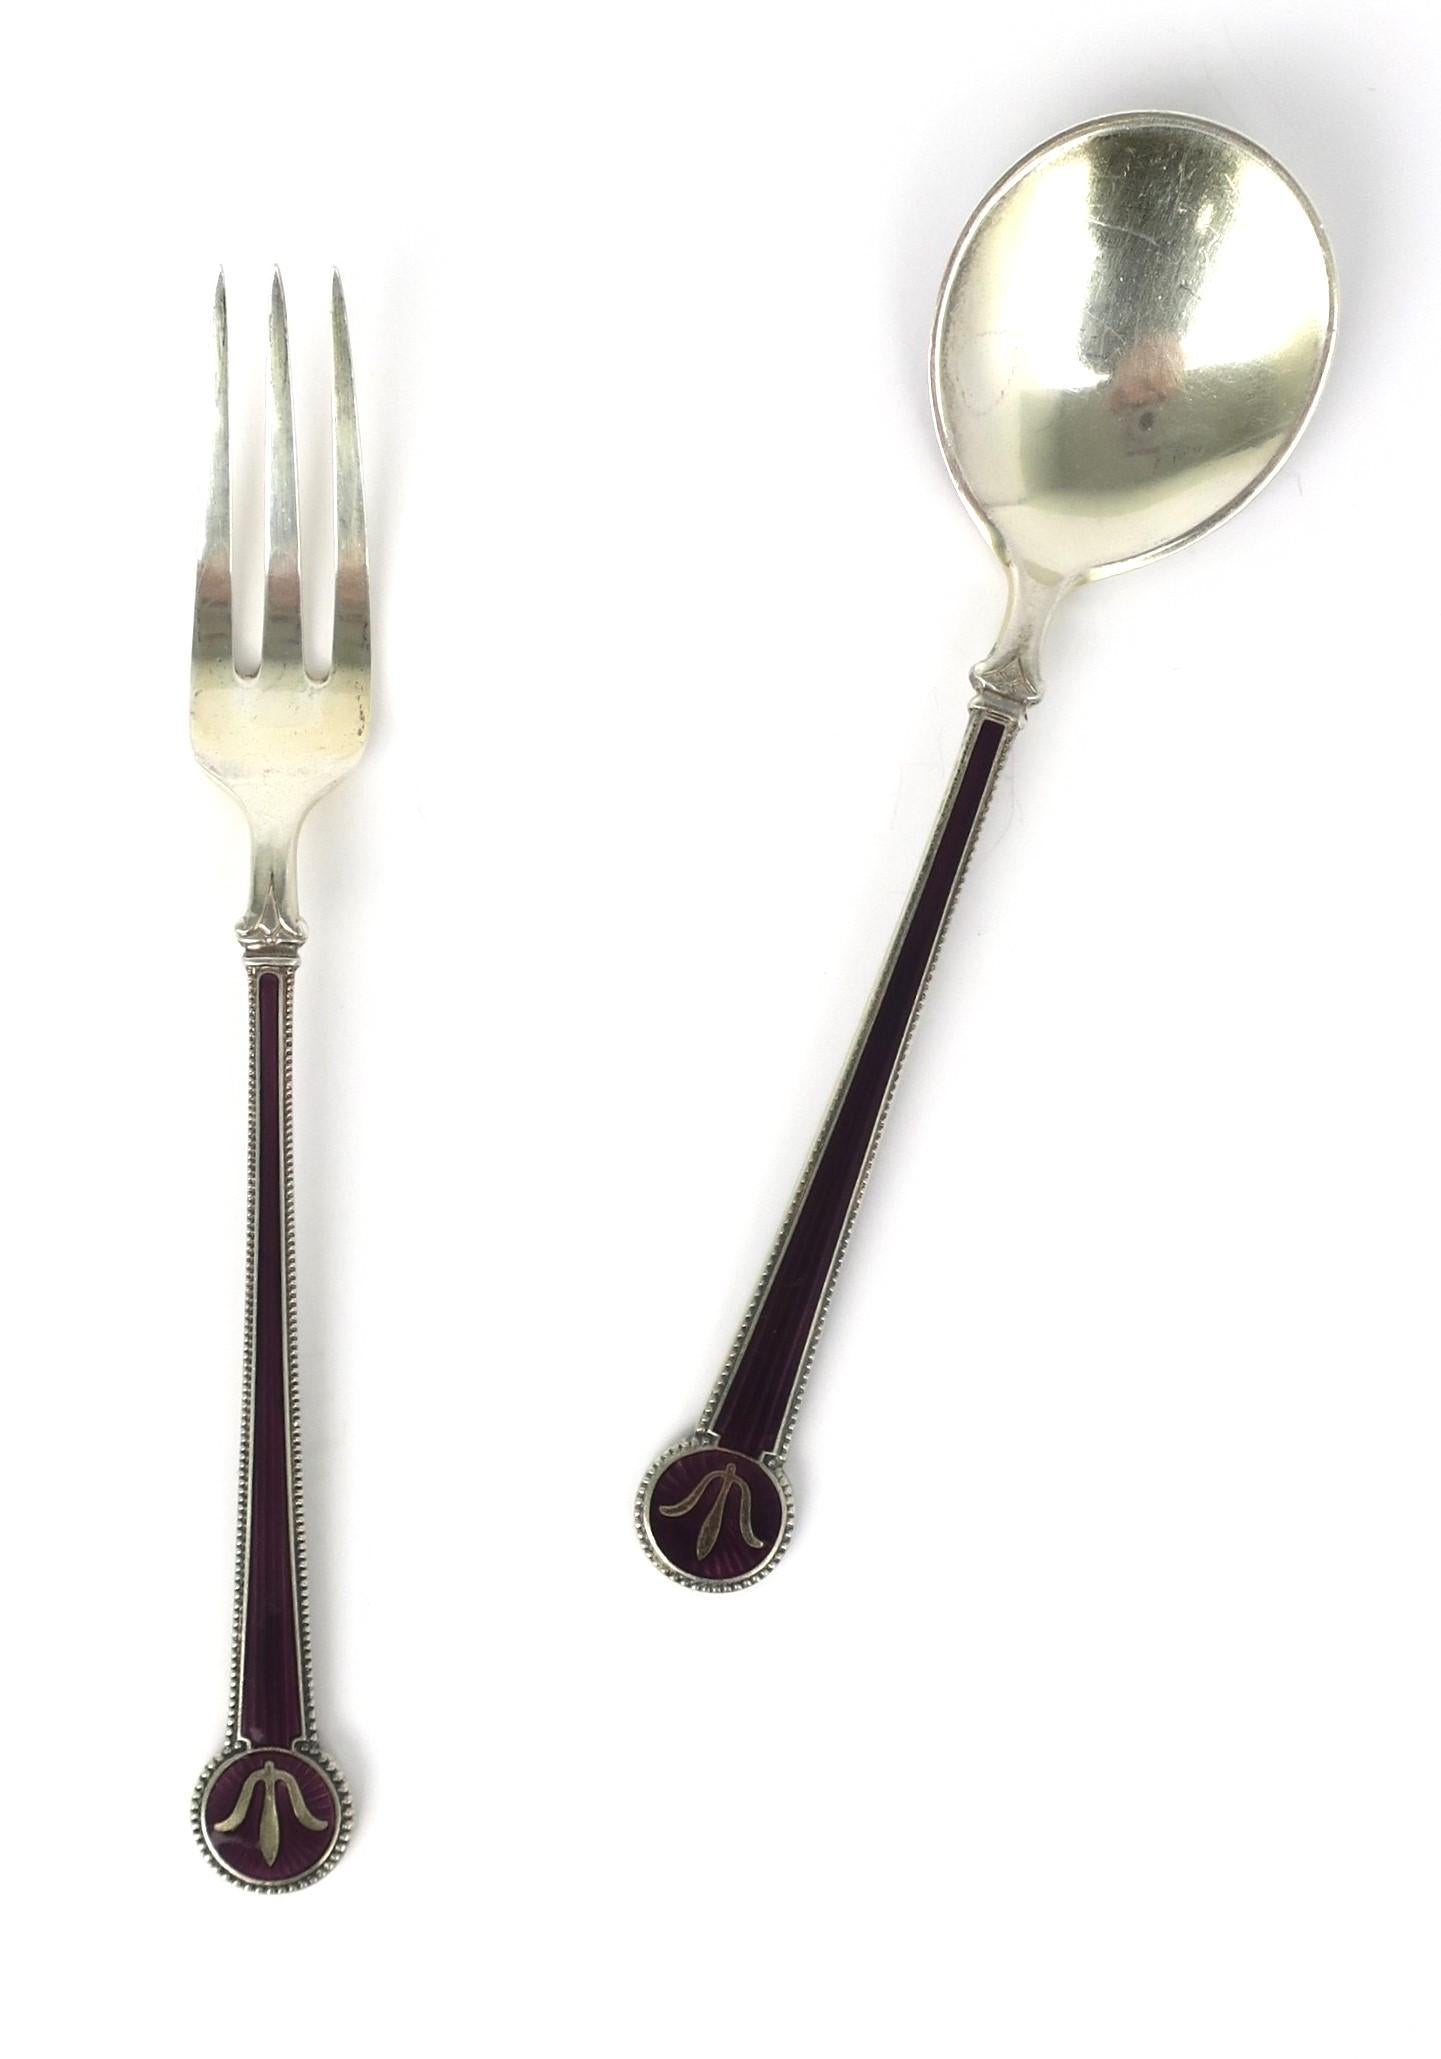 david andersen silver spoons